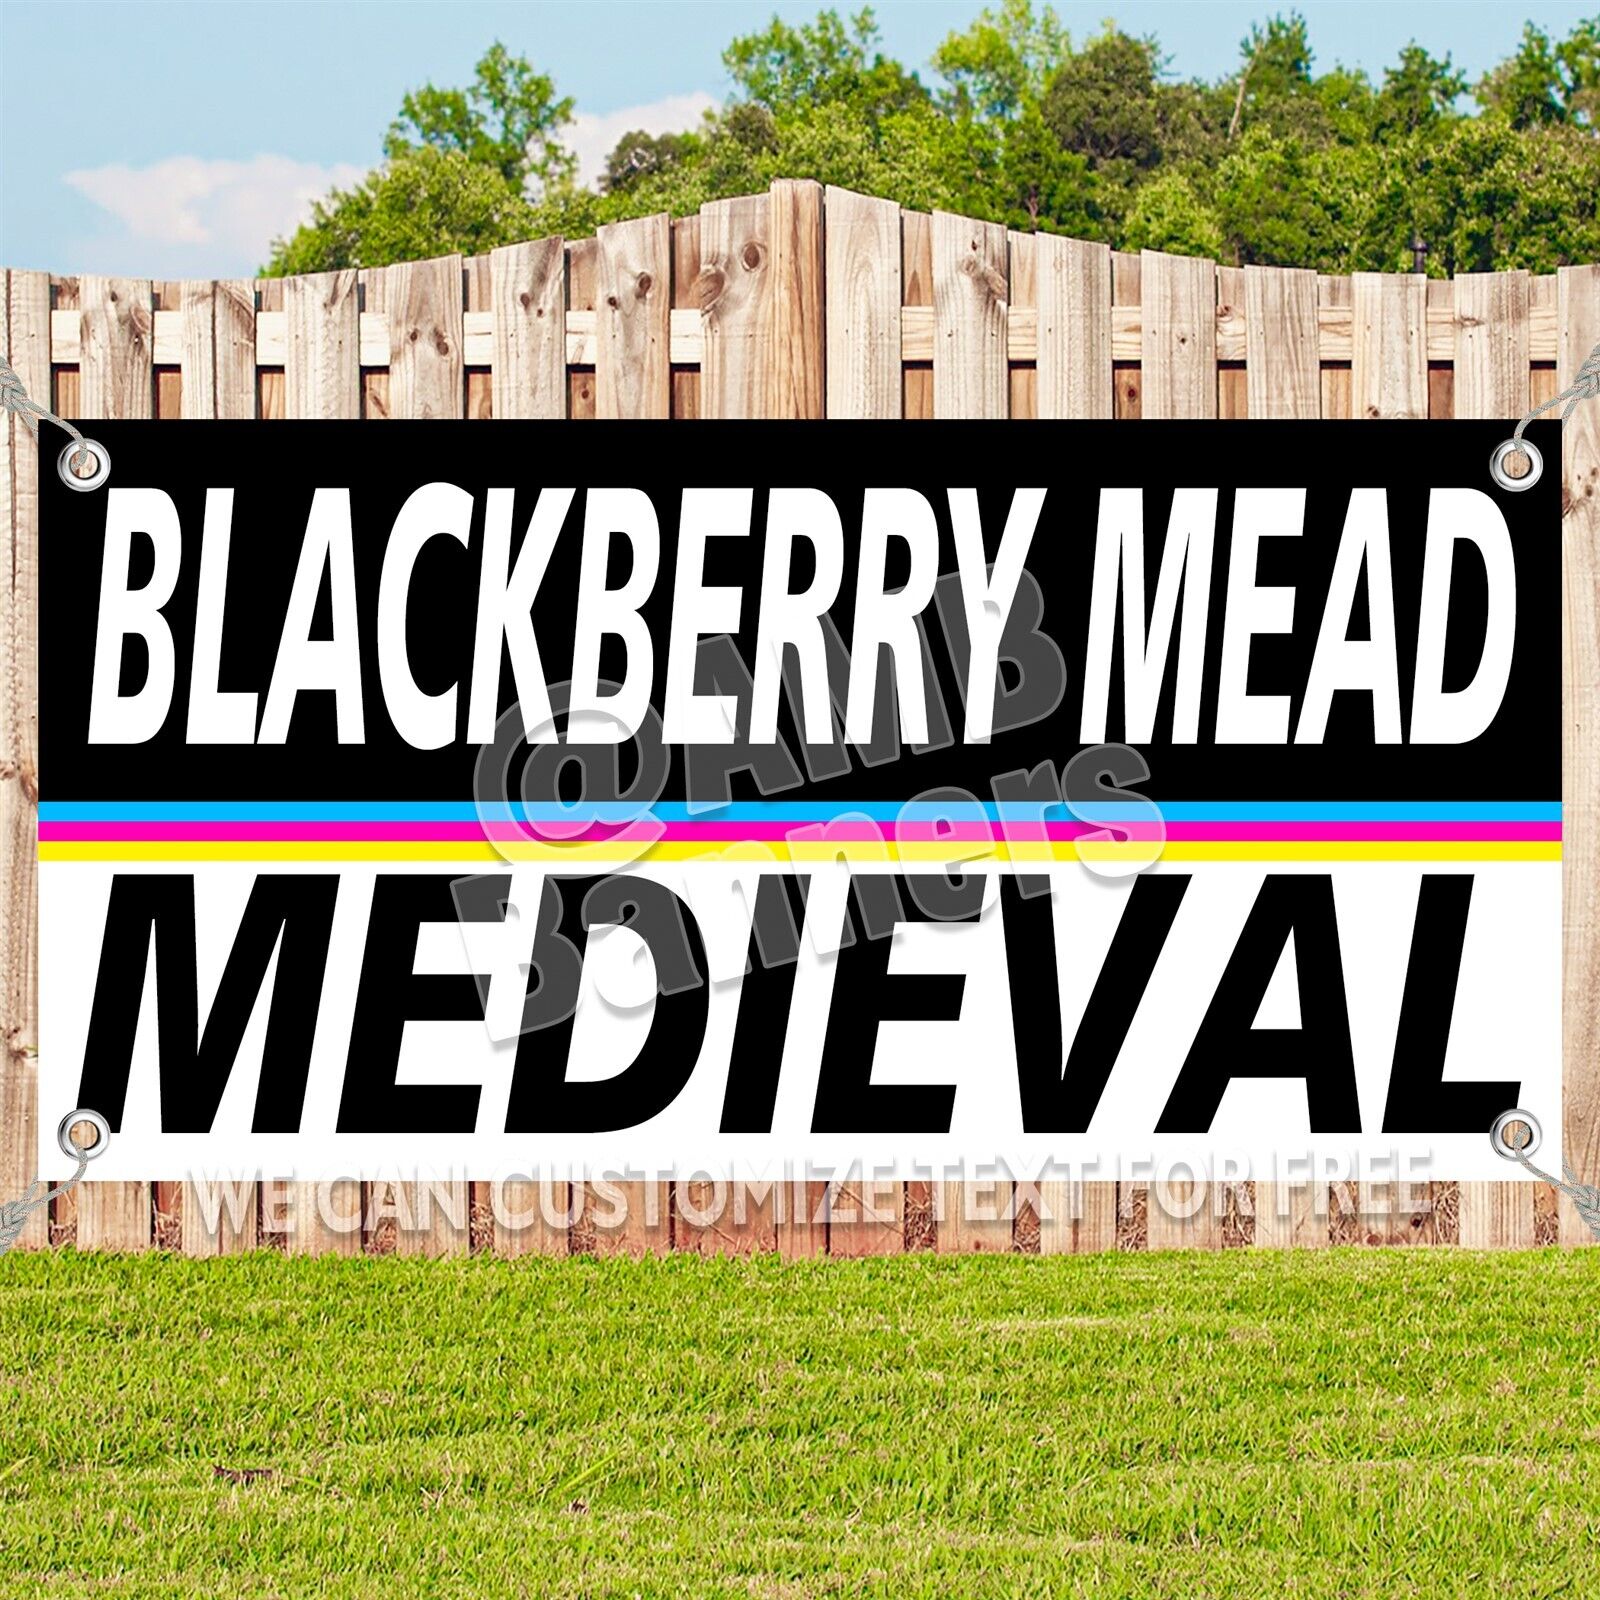 BLACKBERRY MEAD Advertising Vinyl Banner Flag Sign Many Sizes MEDIEVAL V2